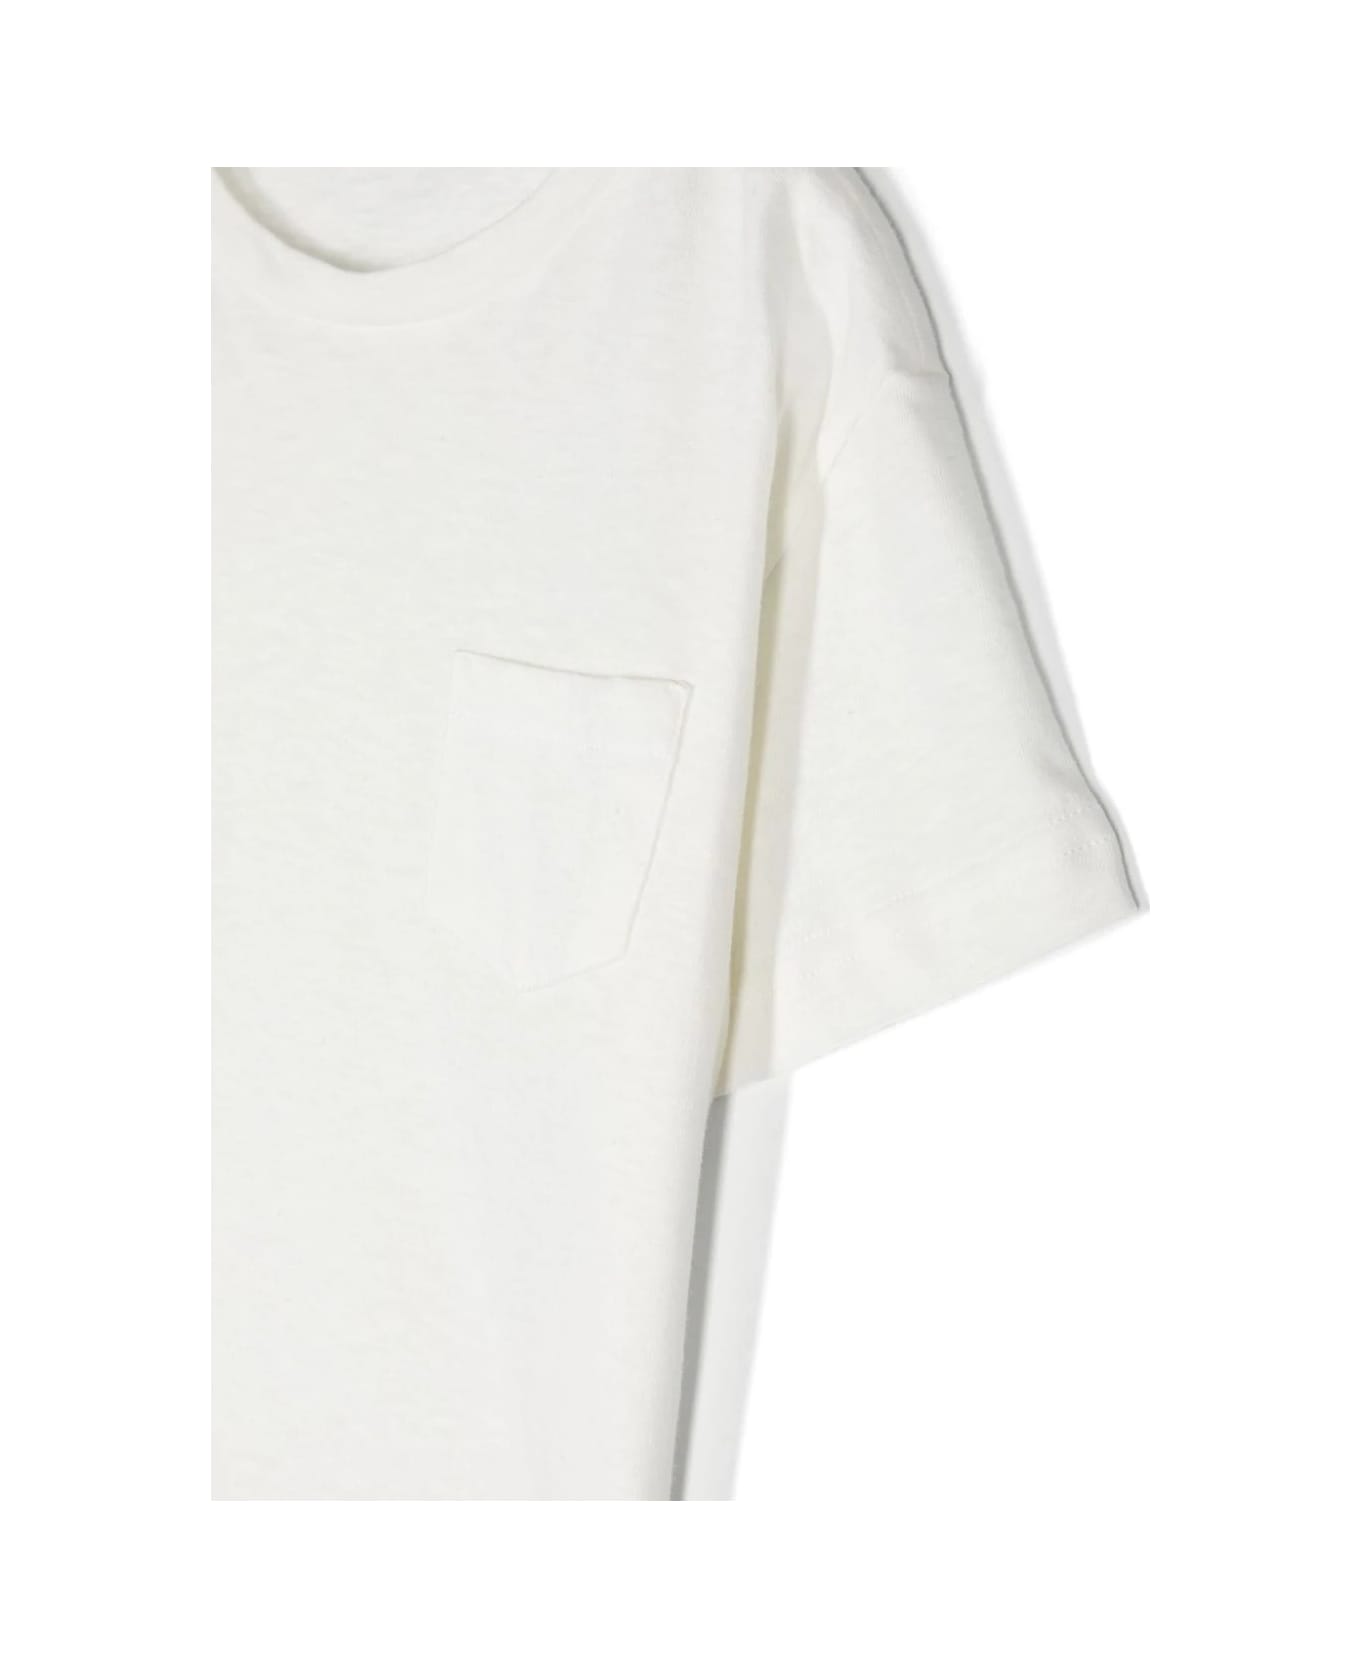 Il Gufo White Cotton And Linen T-shirt - White